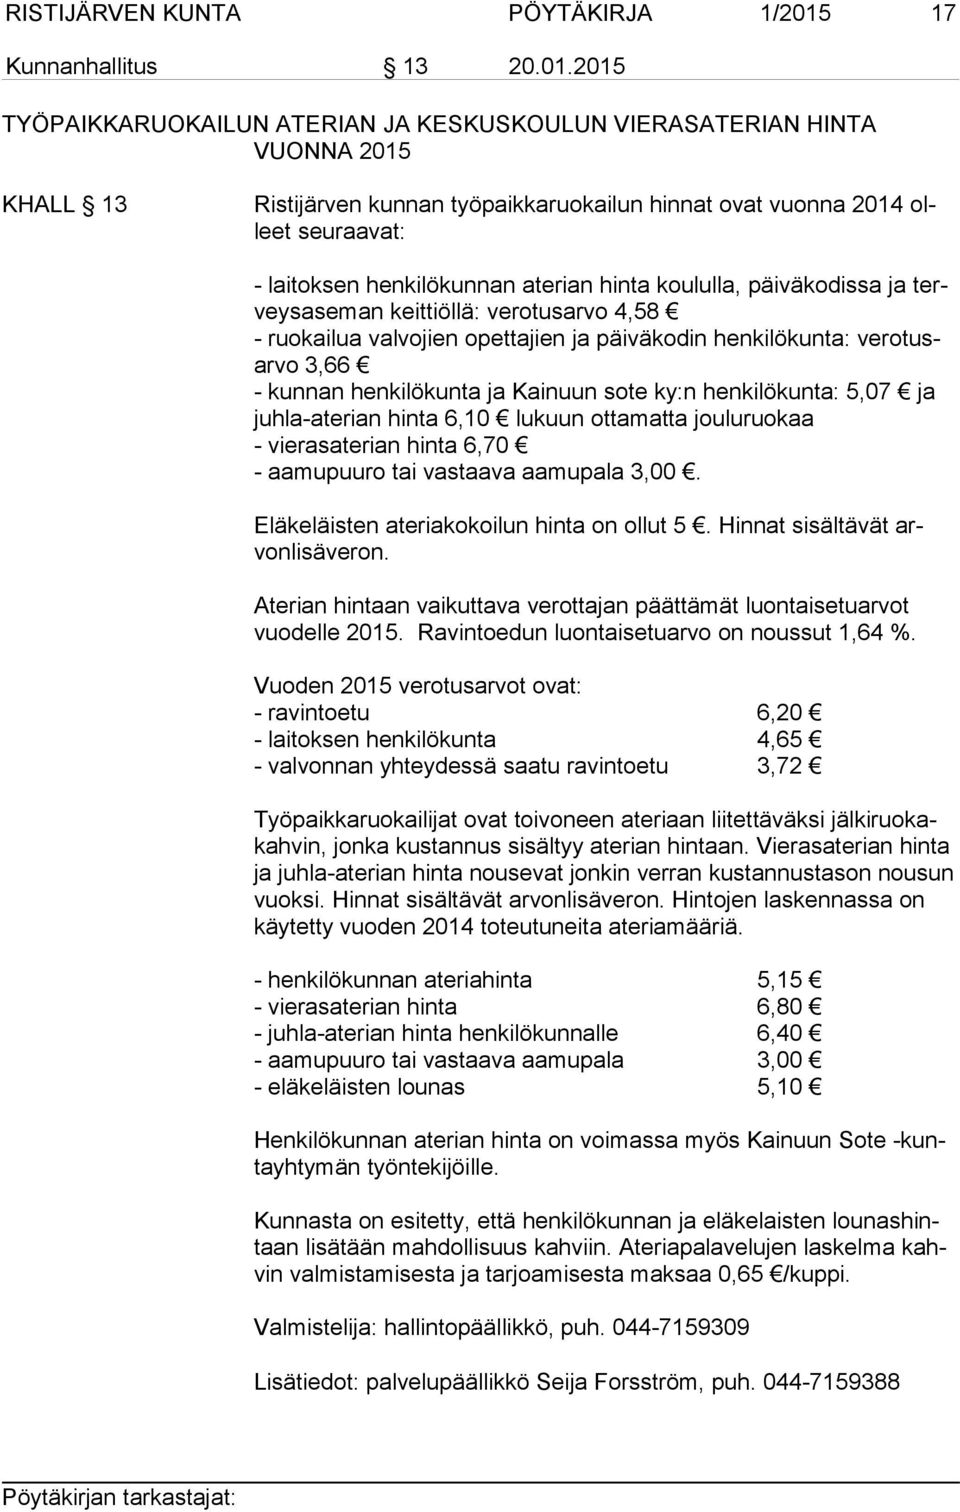 2015 TYÖPAIKKARUOKAILUN ATERIAN JA KESKUSKOULUN VIERASATERIAN HINTA VUONNA 2015 KHALL 13 Ristijärven kunnan työpaikkaruokailun hinnat ovat vuonna 2014 olleet seuraavat: - laitoksen henkilökunnan